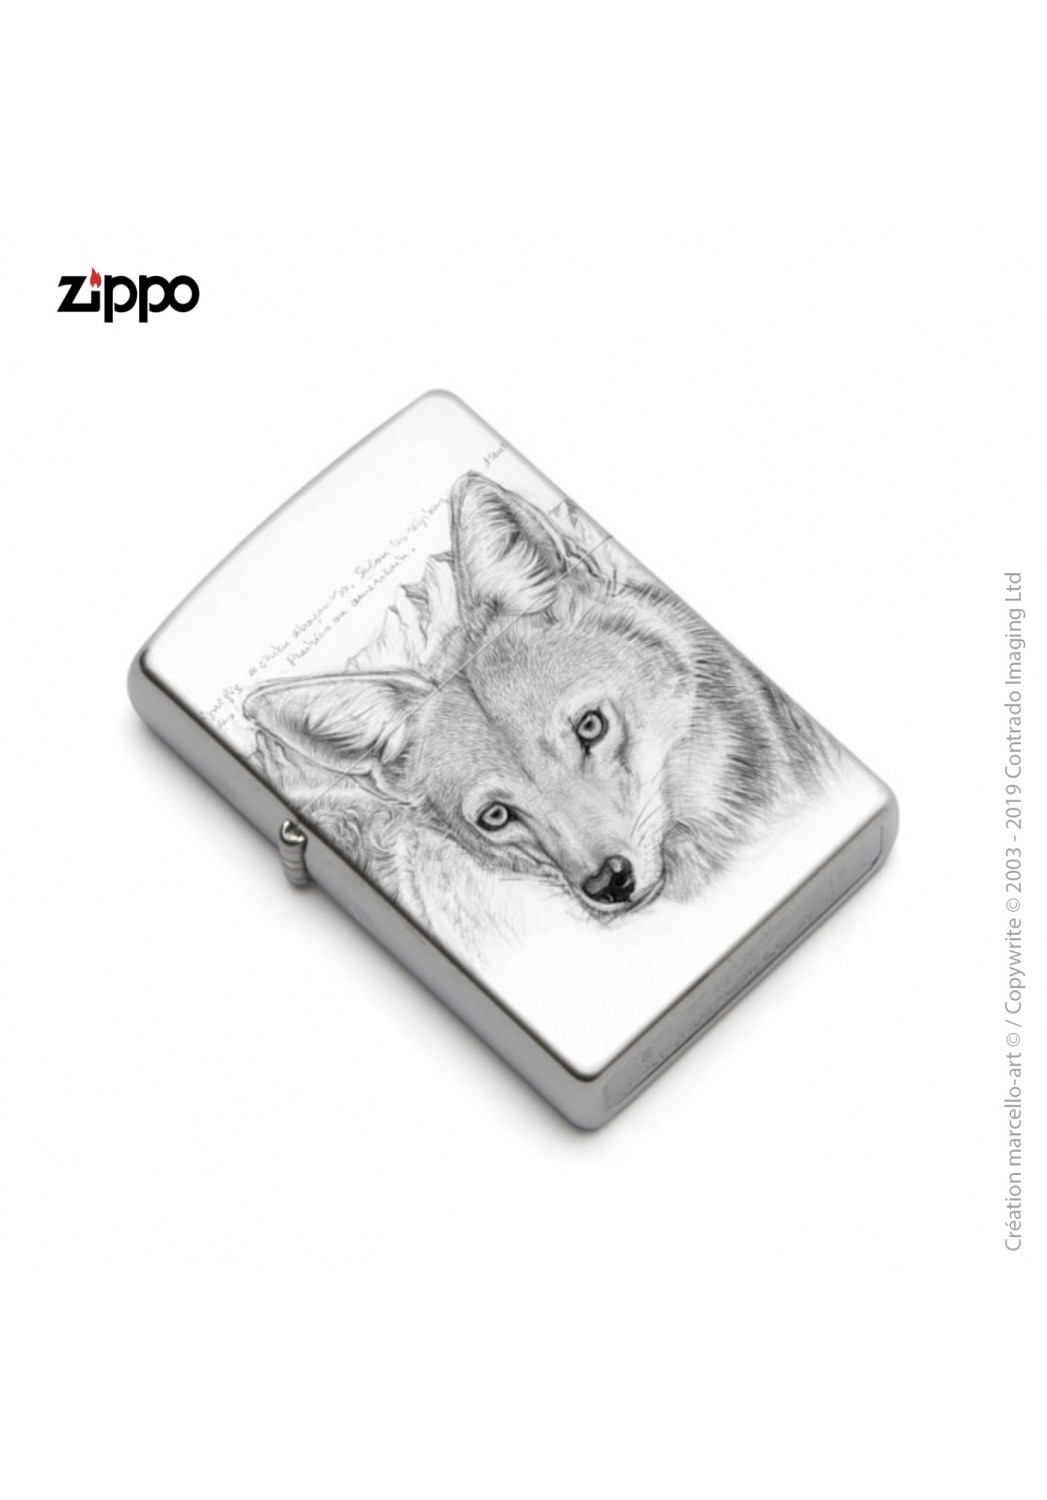 Marcello-art : Accessoires de décoration Zippo 391 coyote